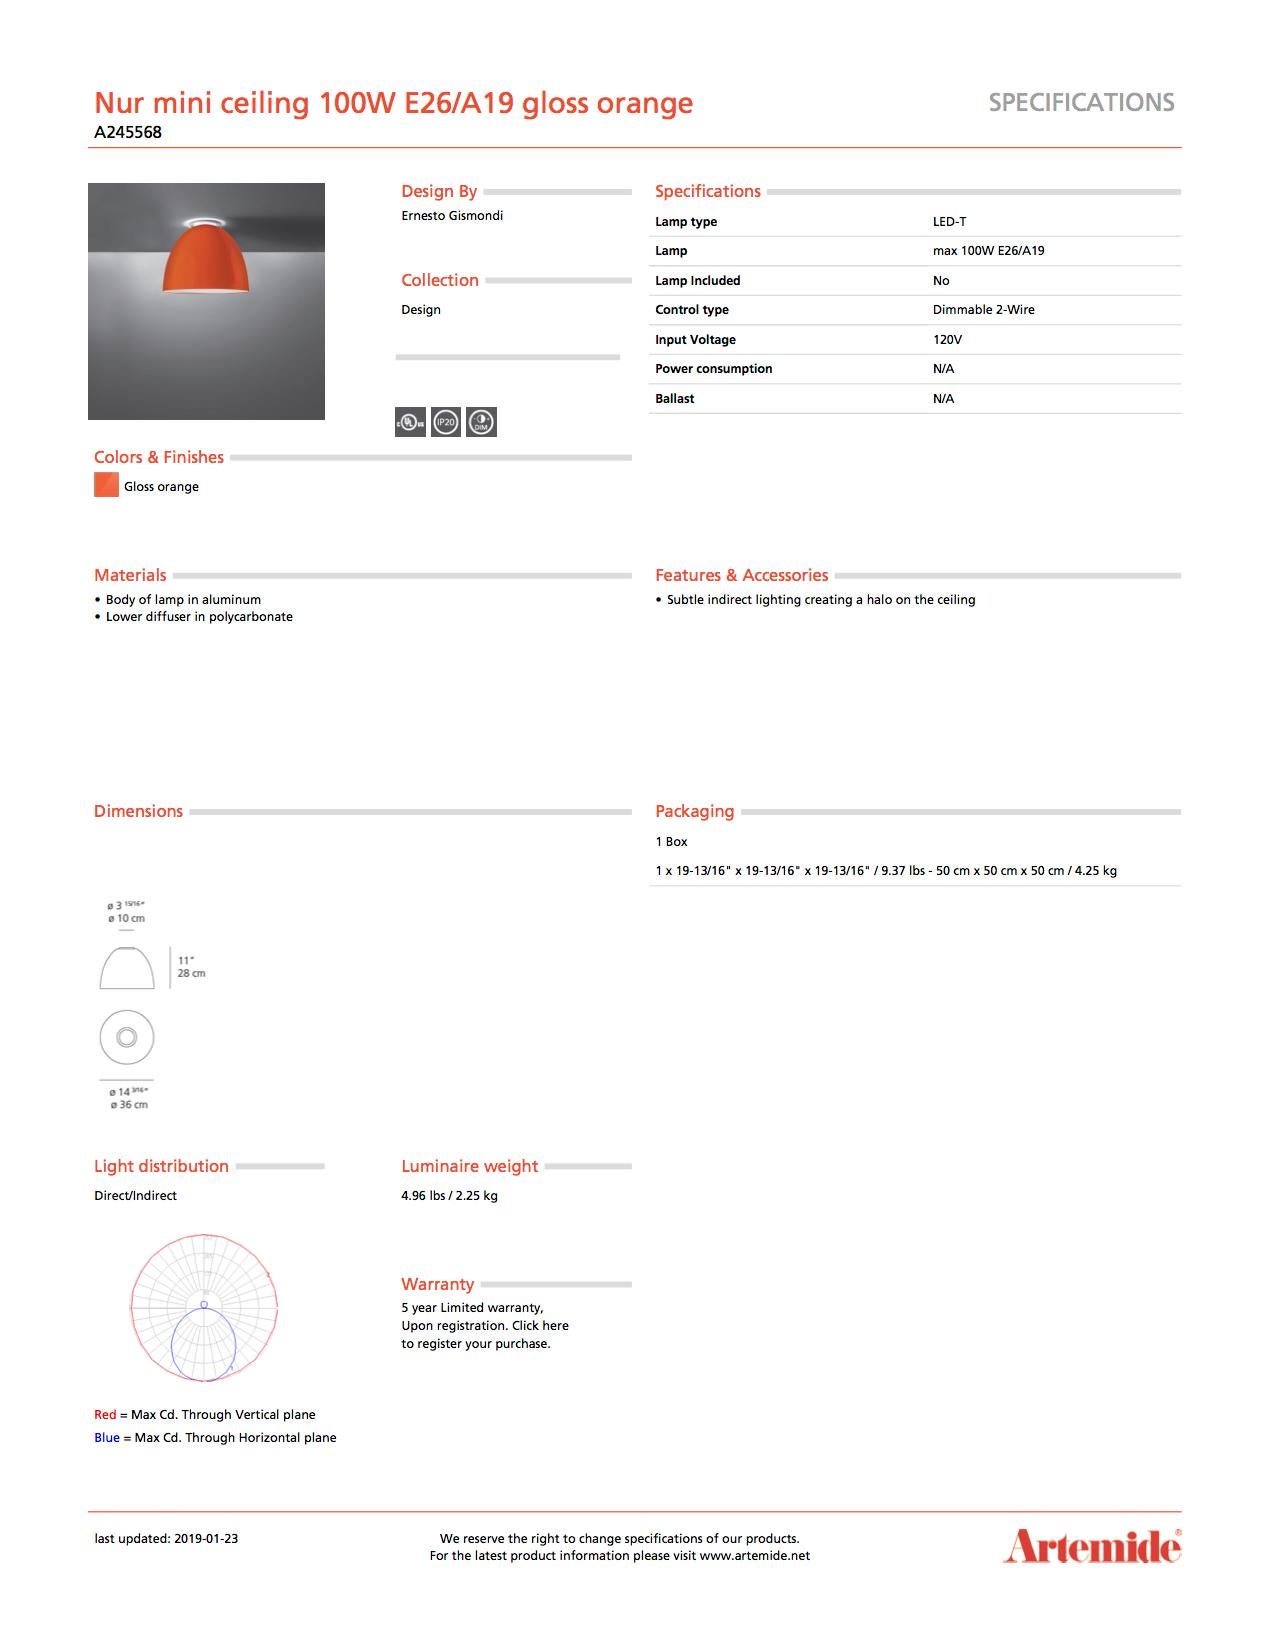 Artemide Nur Mini 100W E26 oder A19 Deckenleuchte in glänzendem Orange (Moderne) im Angebot